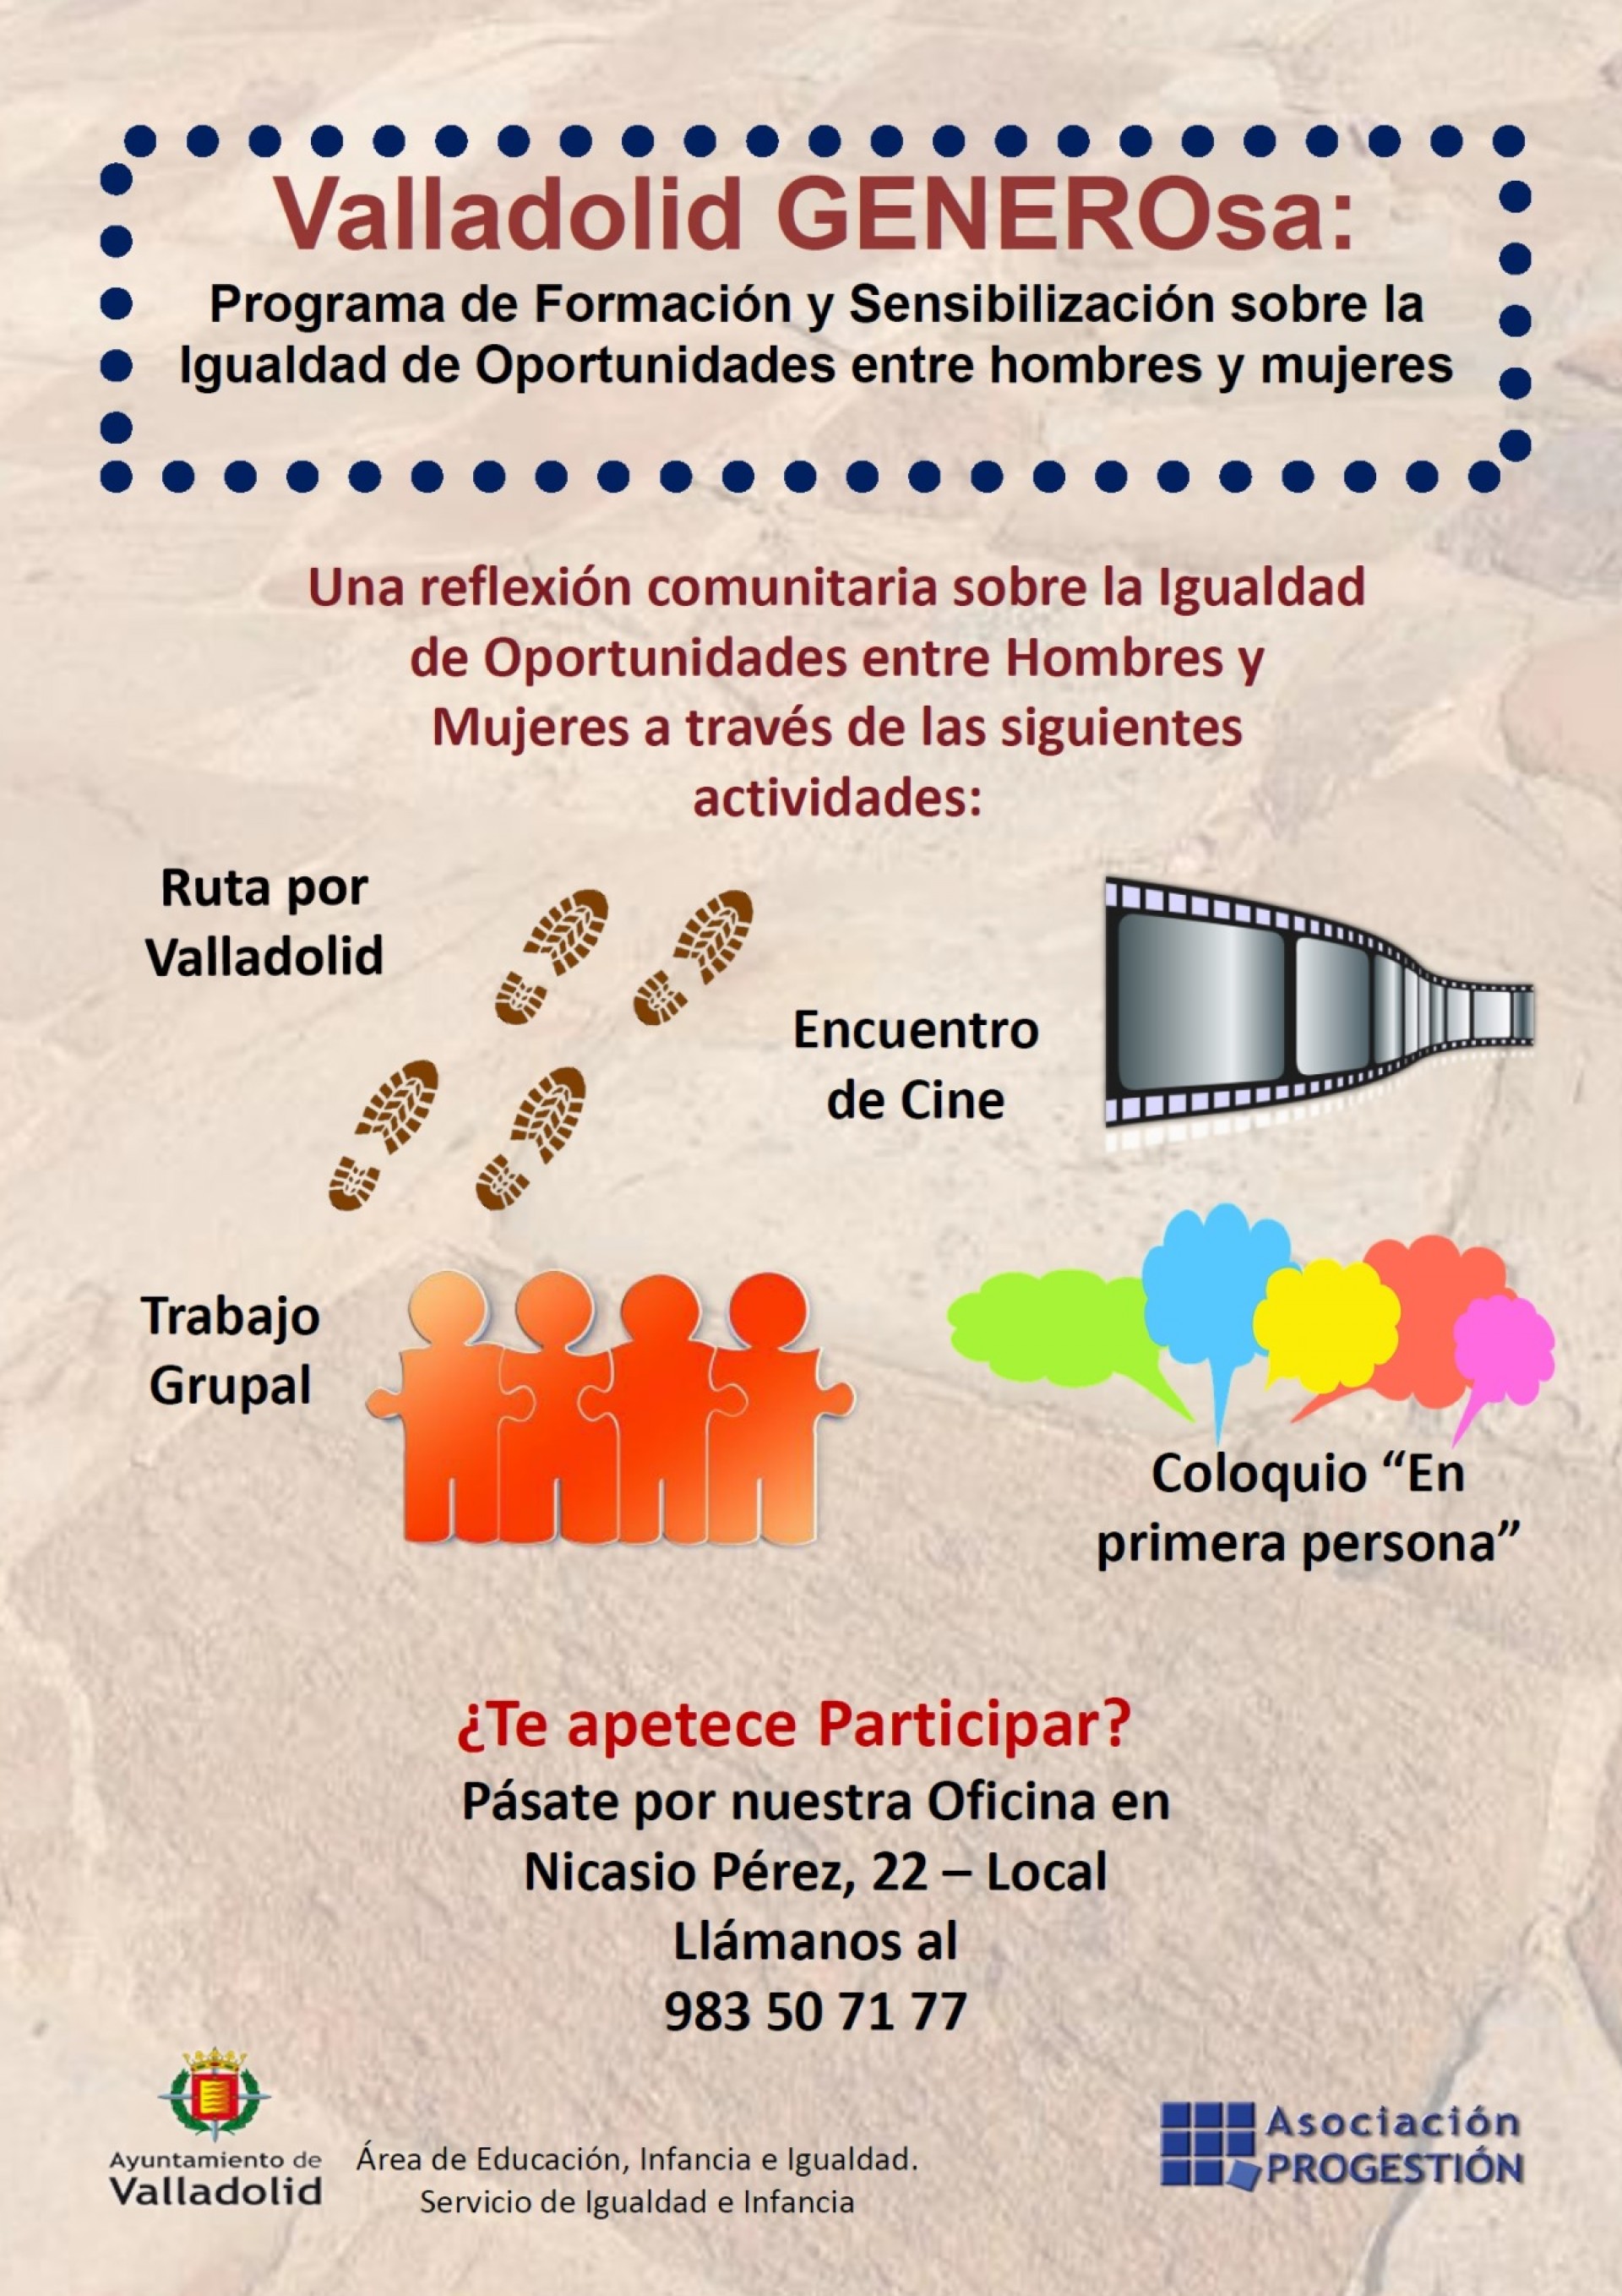 Valladolid GENEROsa, un proyecto de la Asociación Progestión que trabajará por la igualdad de la mujer